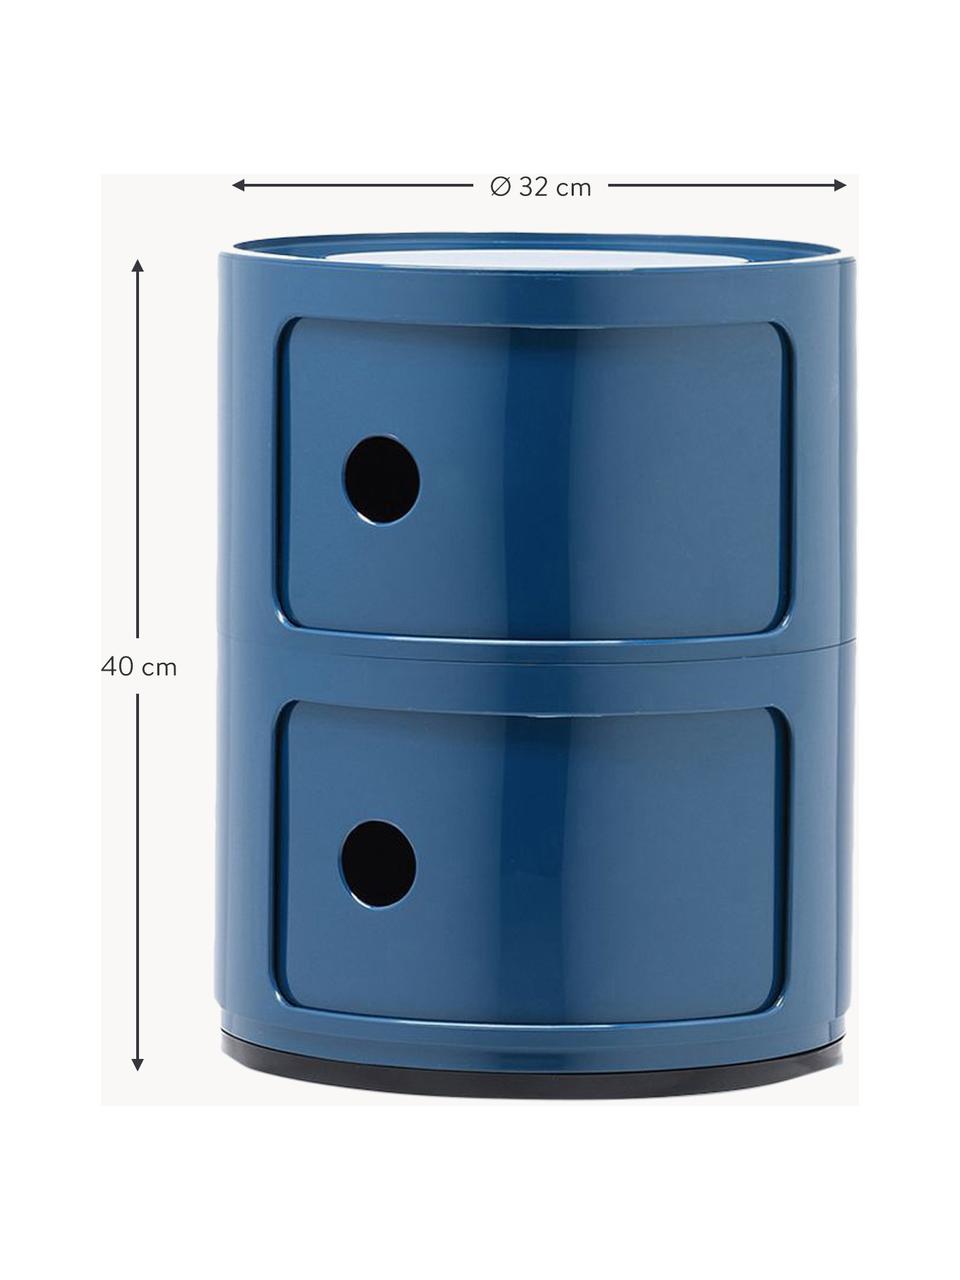 Design Container Componibili, 2 Elemente, Kunststoff (ABS), lackiert, Greenguard-zertifiziert, Graublau, glänzend, Ø 32 x H 40 cm